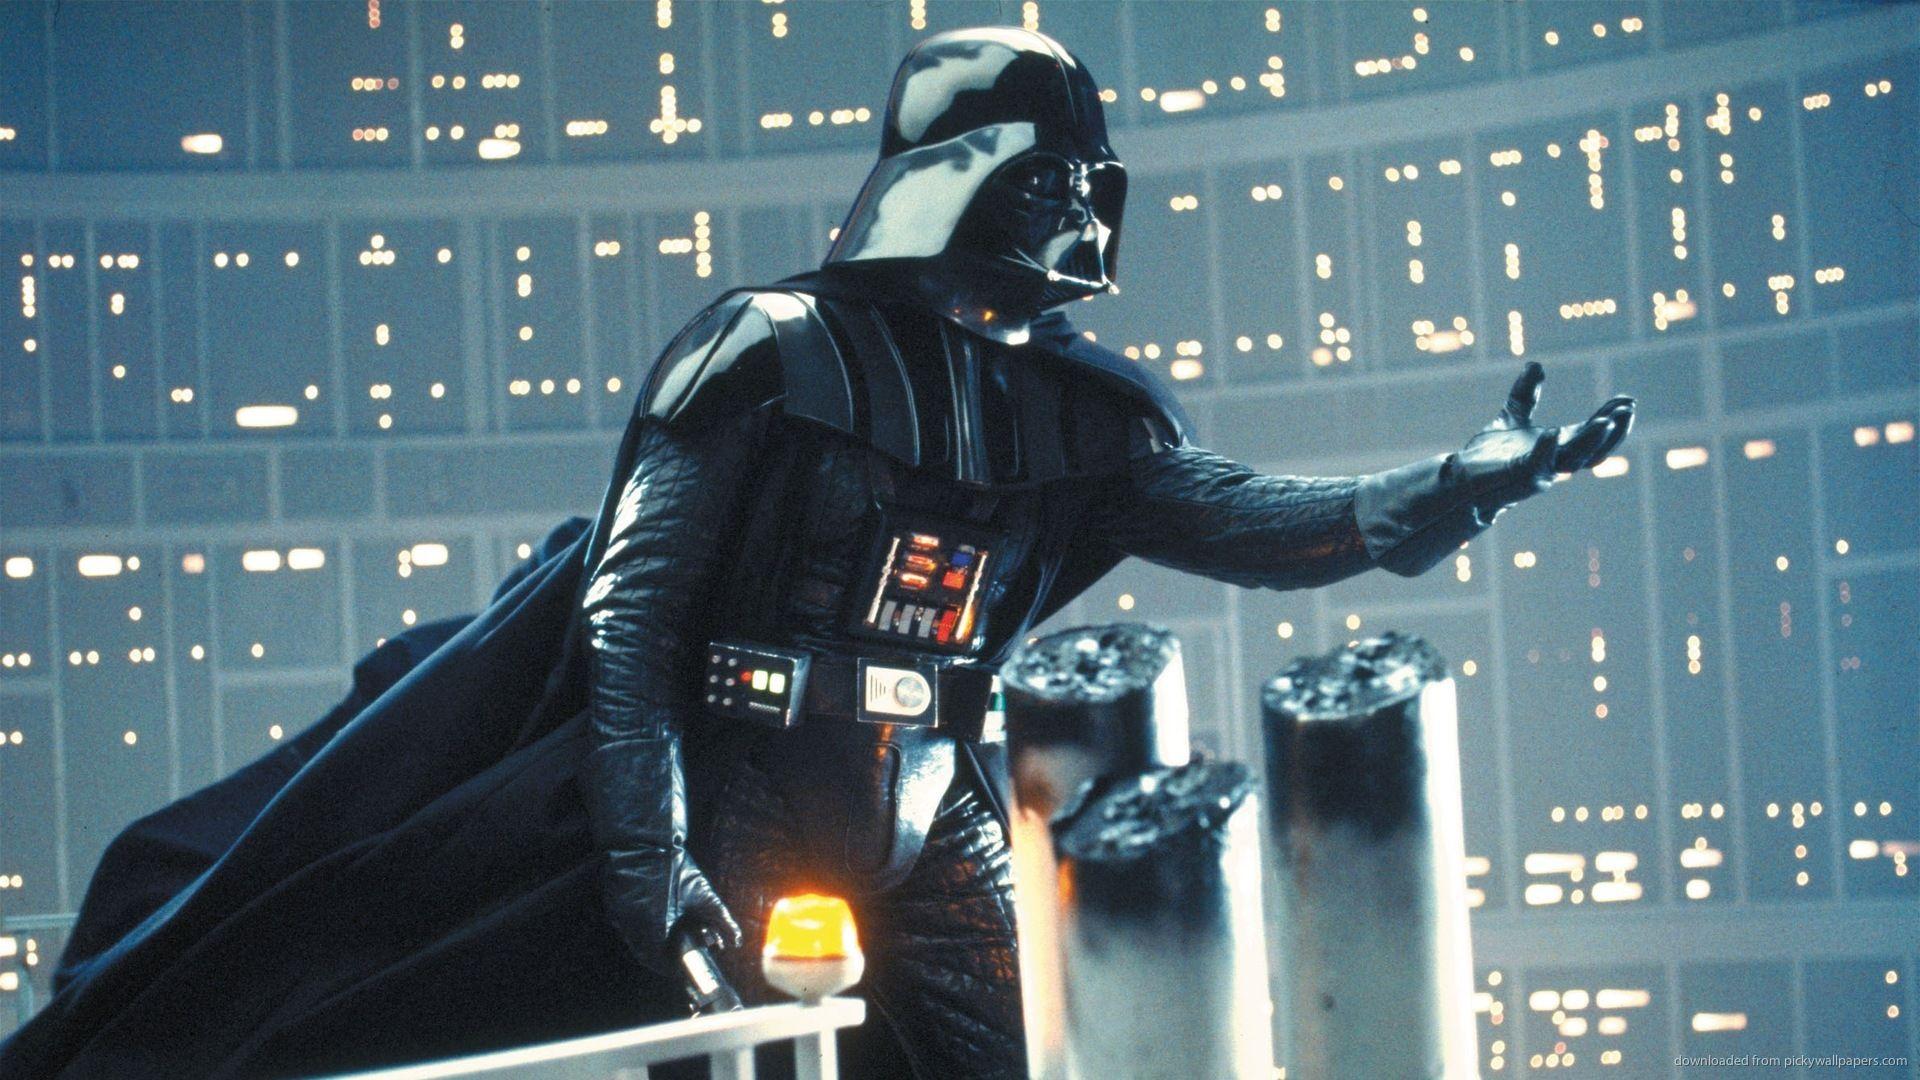 X Darth Vader Full HD Star Wars Wallpaper Of Mobile Phones Pics